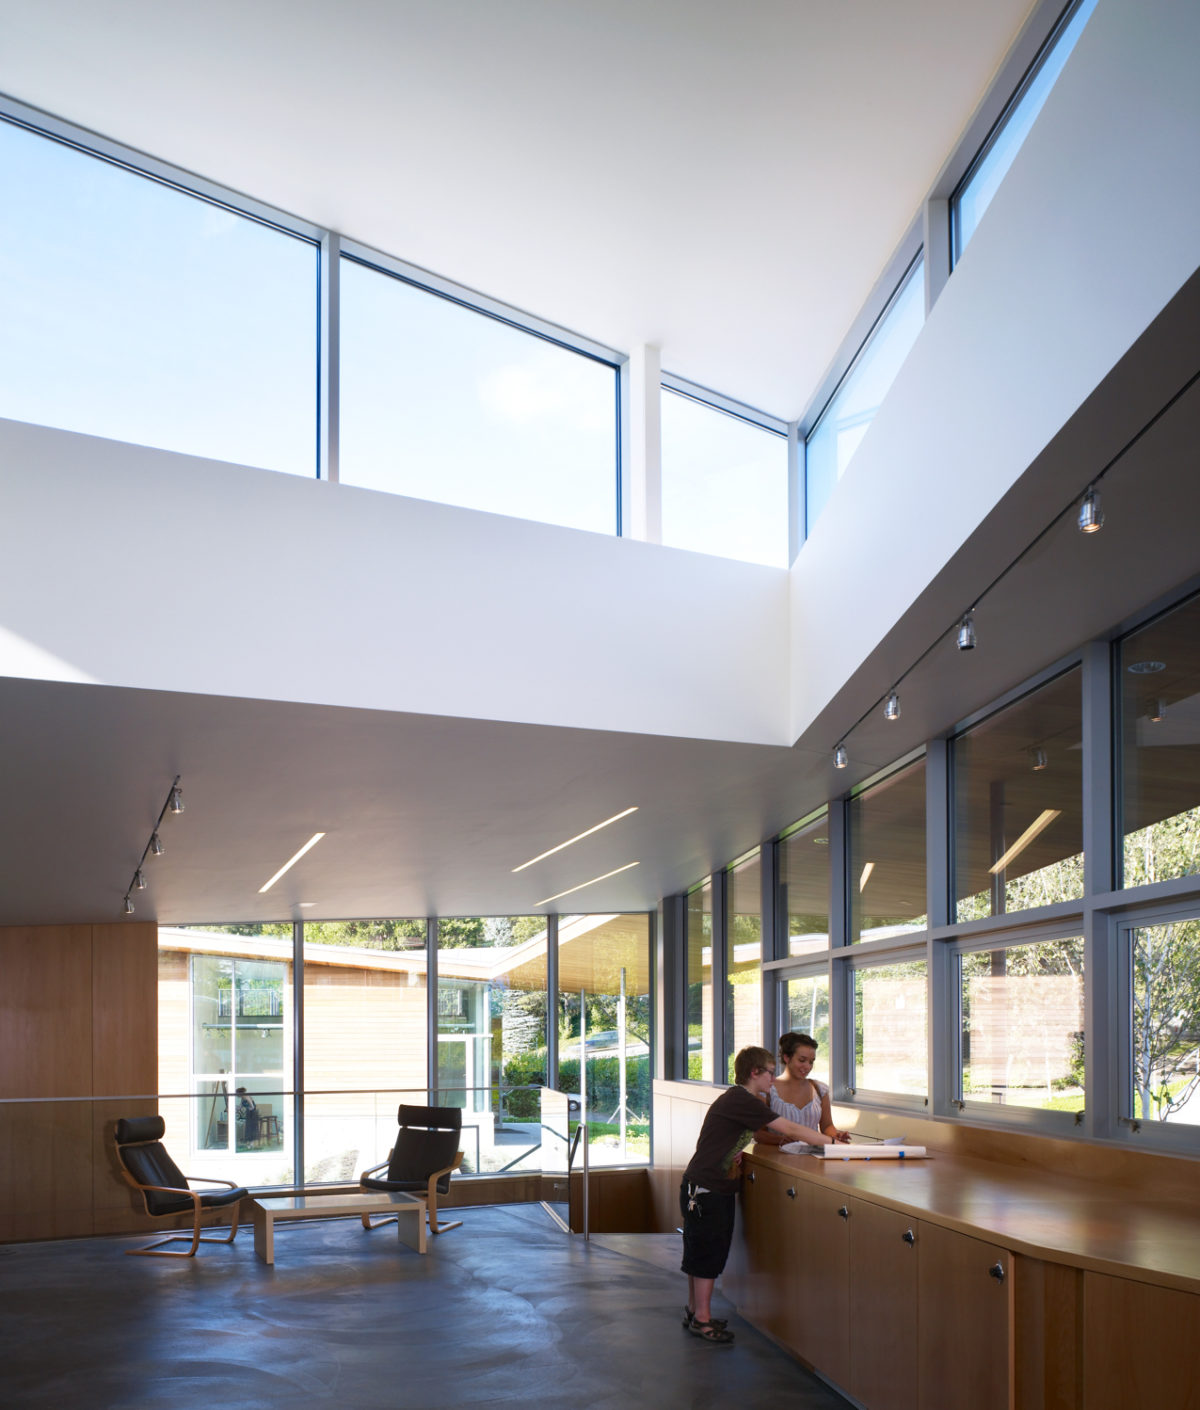 Oregon College of Art and Craft Architecture Interior Design